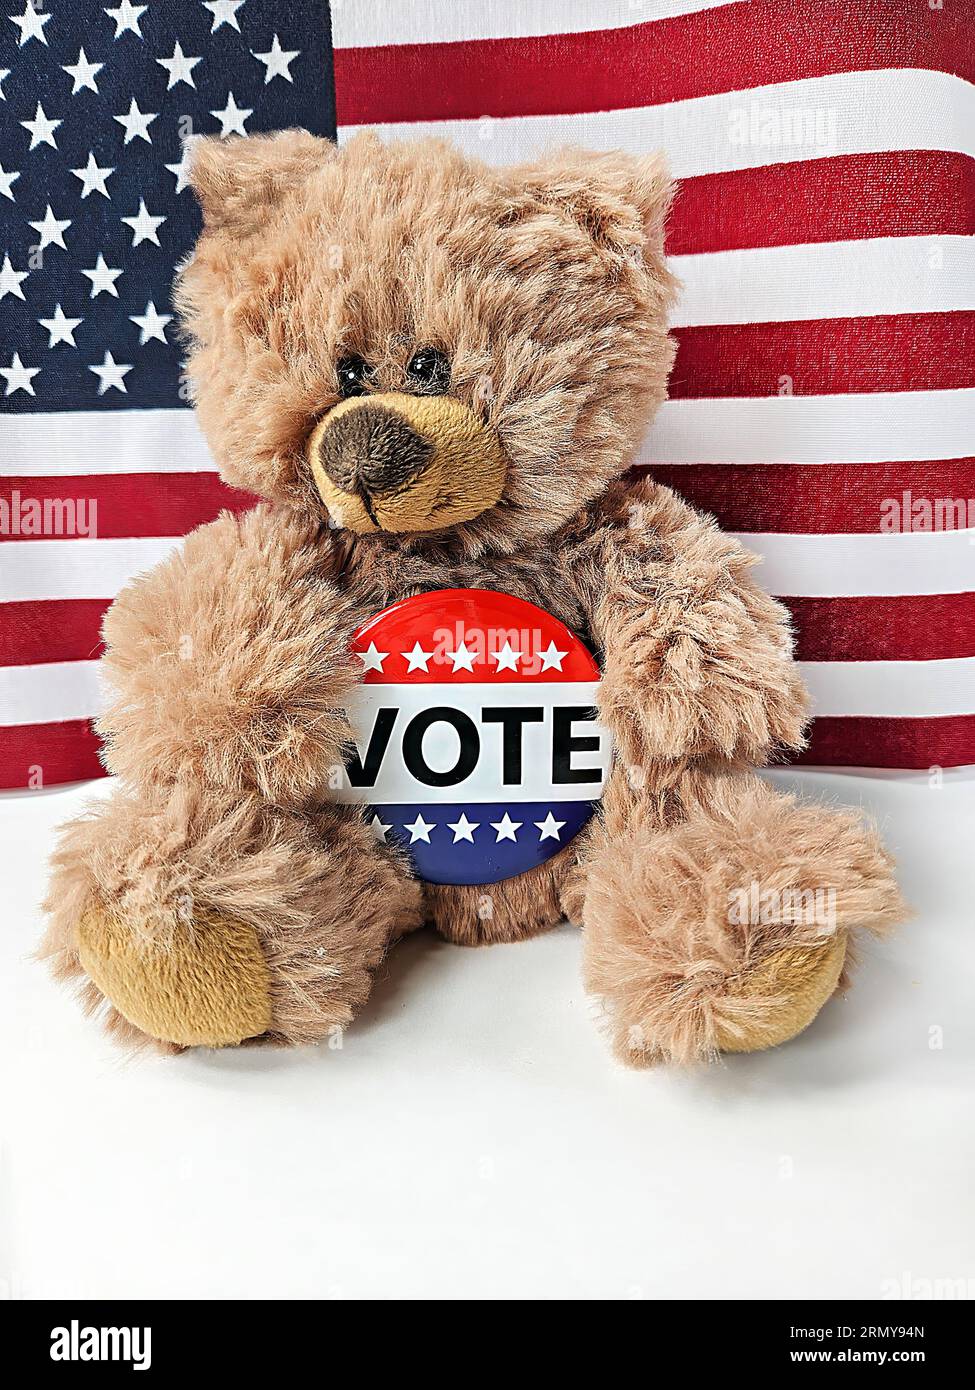 Ours en peluche brun avec épinglette de vote de campagne électorale et fond de drapeau américain Banque D'Images